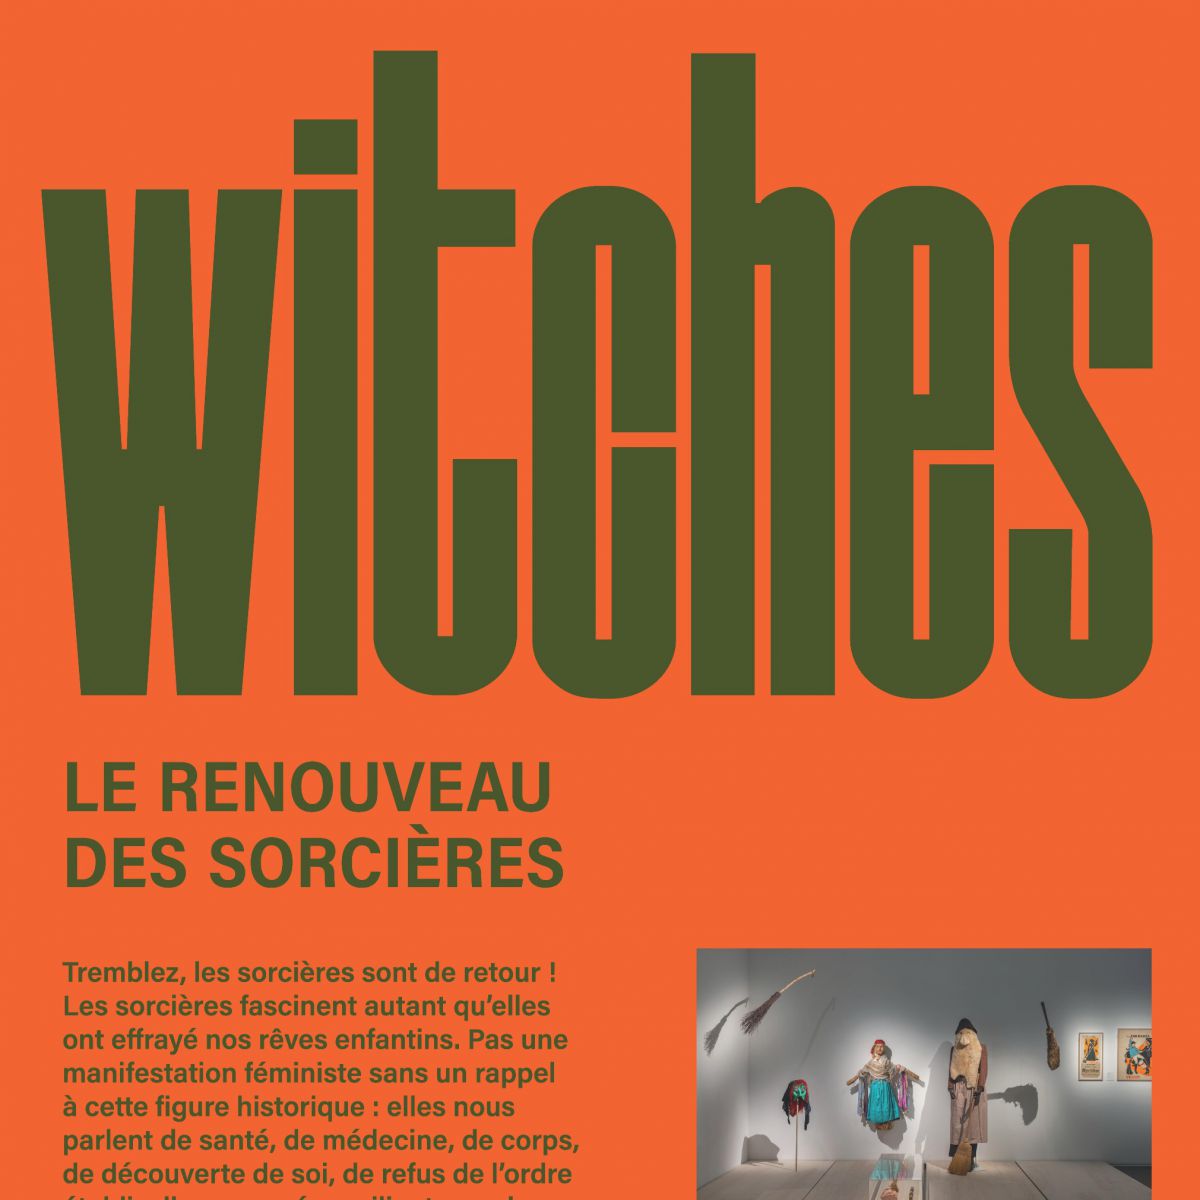 Titre Witches sur fond orange